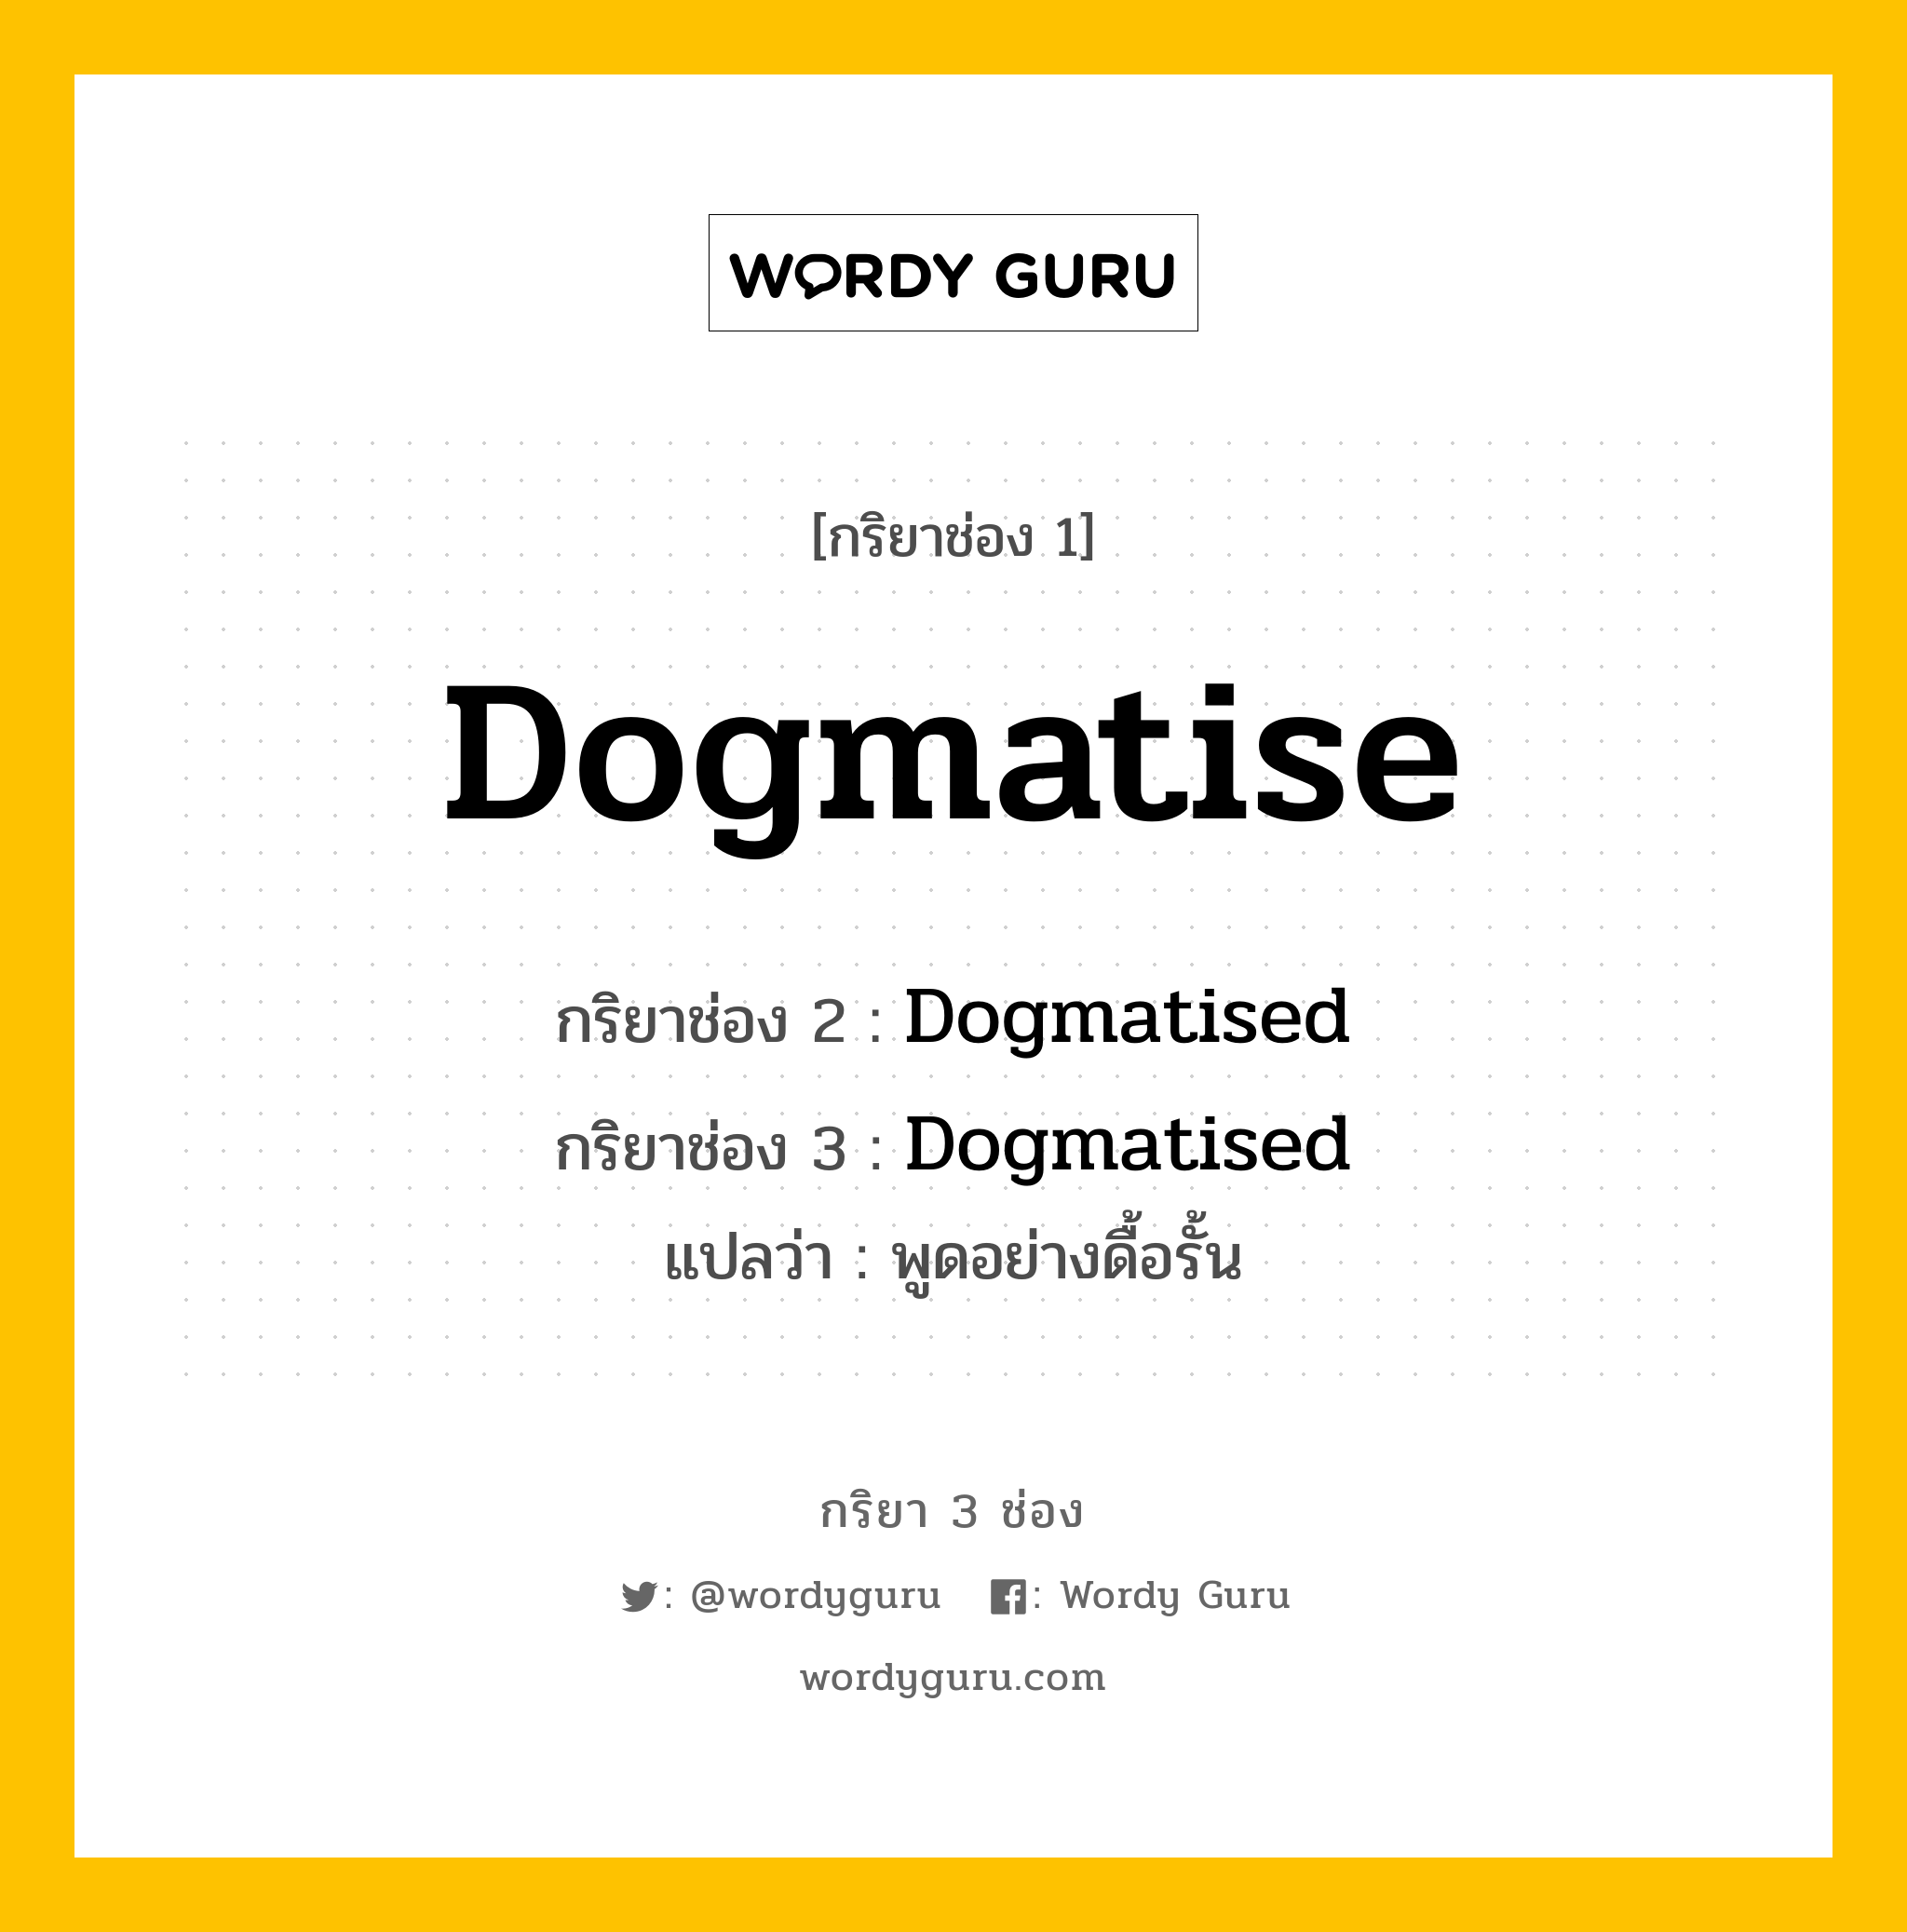 กริยา 3 ช่อง: Dogmatise ช่อง 2 Dogmatise ช่อง 3 คืออะไร, กริยาช่อง 1 Dogmatise กริยาช่อง 2 Dogmatised กริยาช่อง 3 Dogmatised แปลว่า พูดอย่างดื้อรั้น หมวด Regular Verb